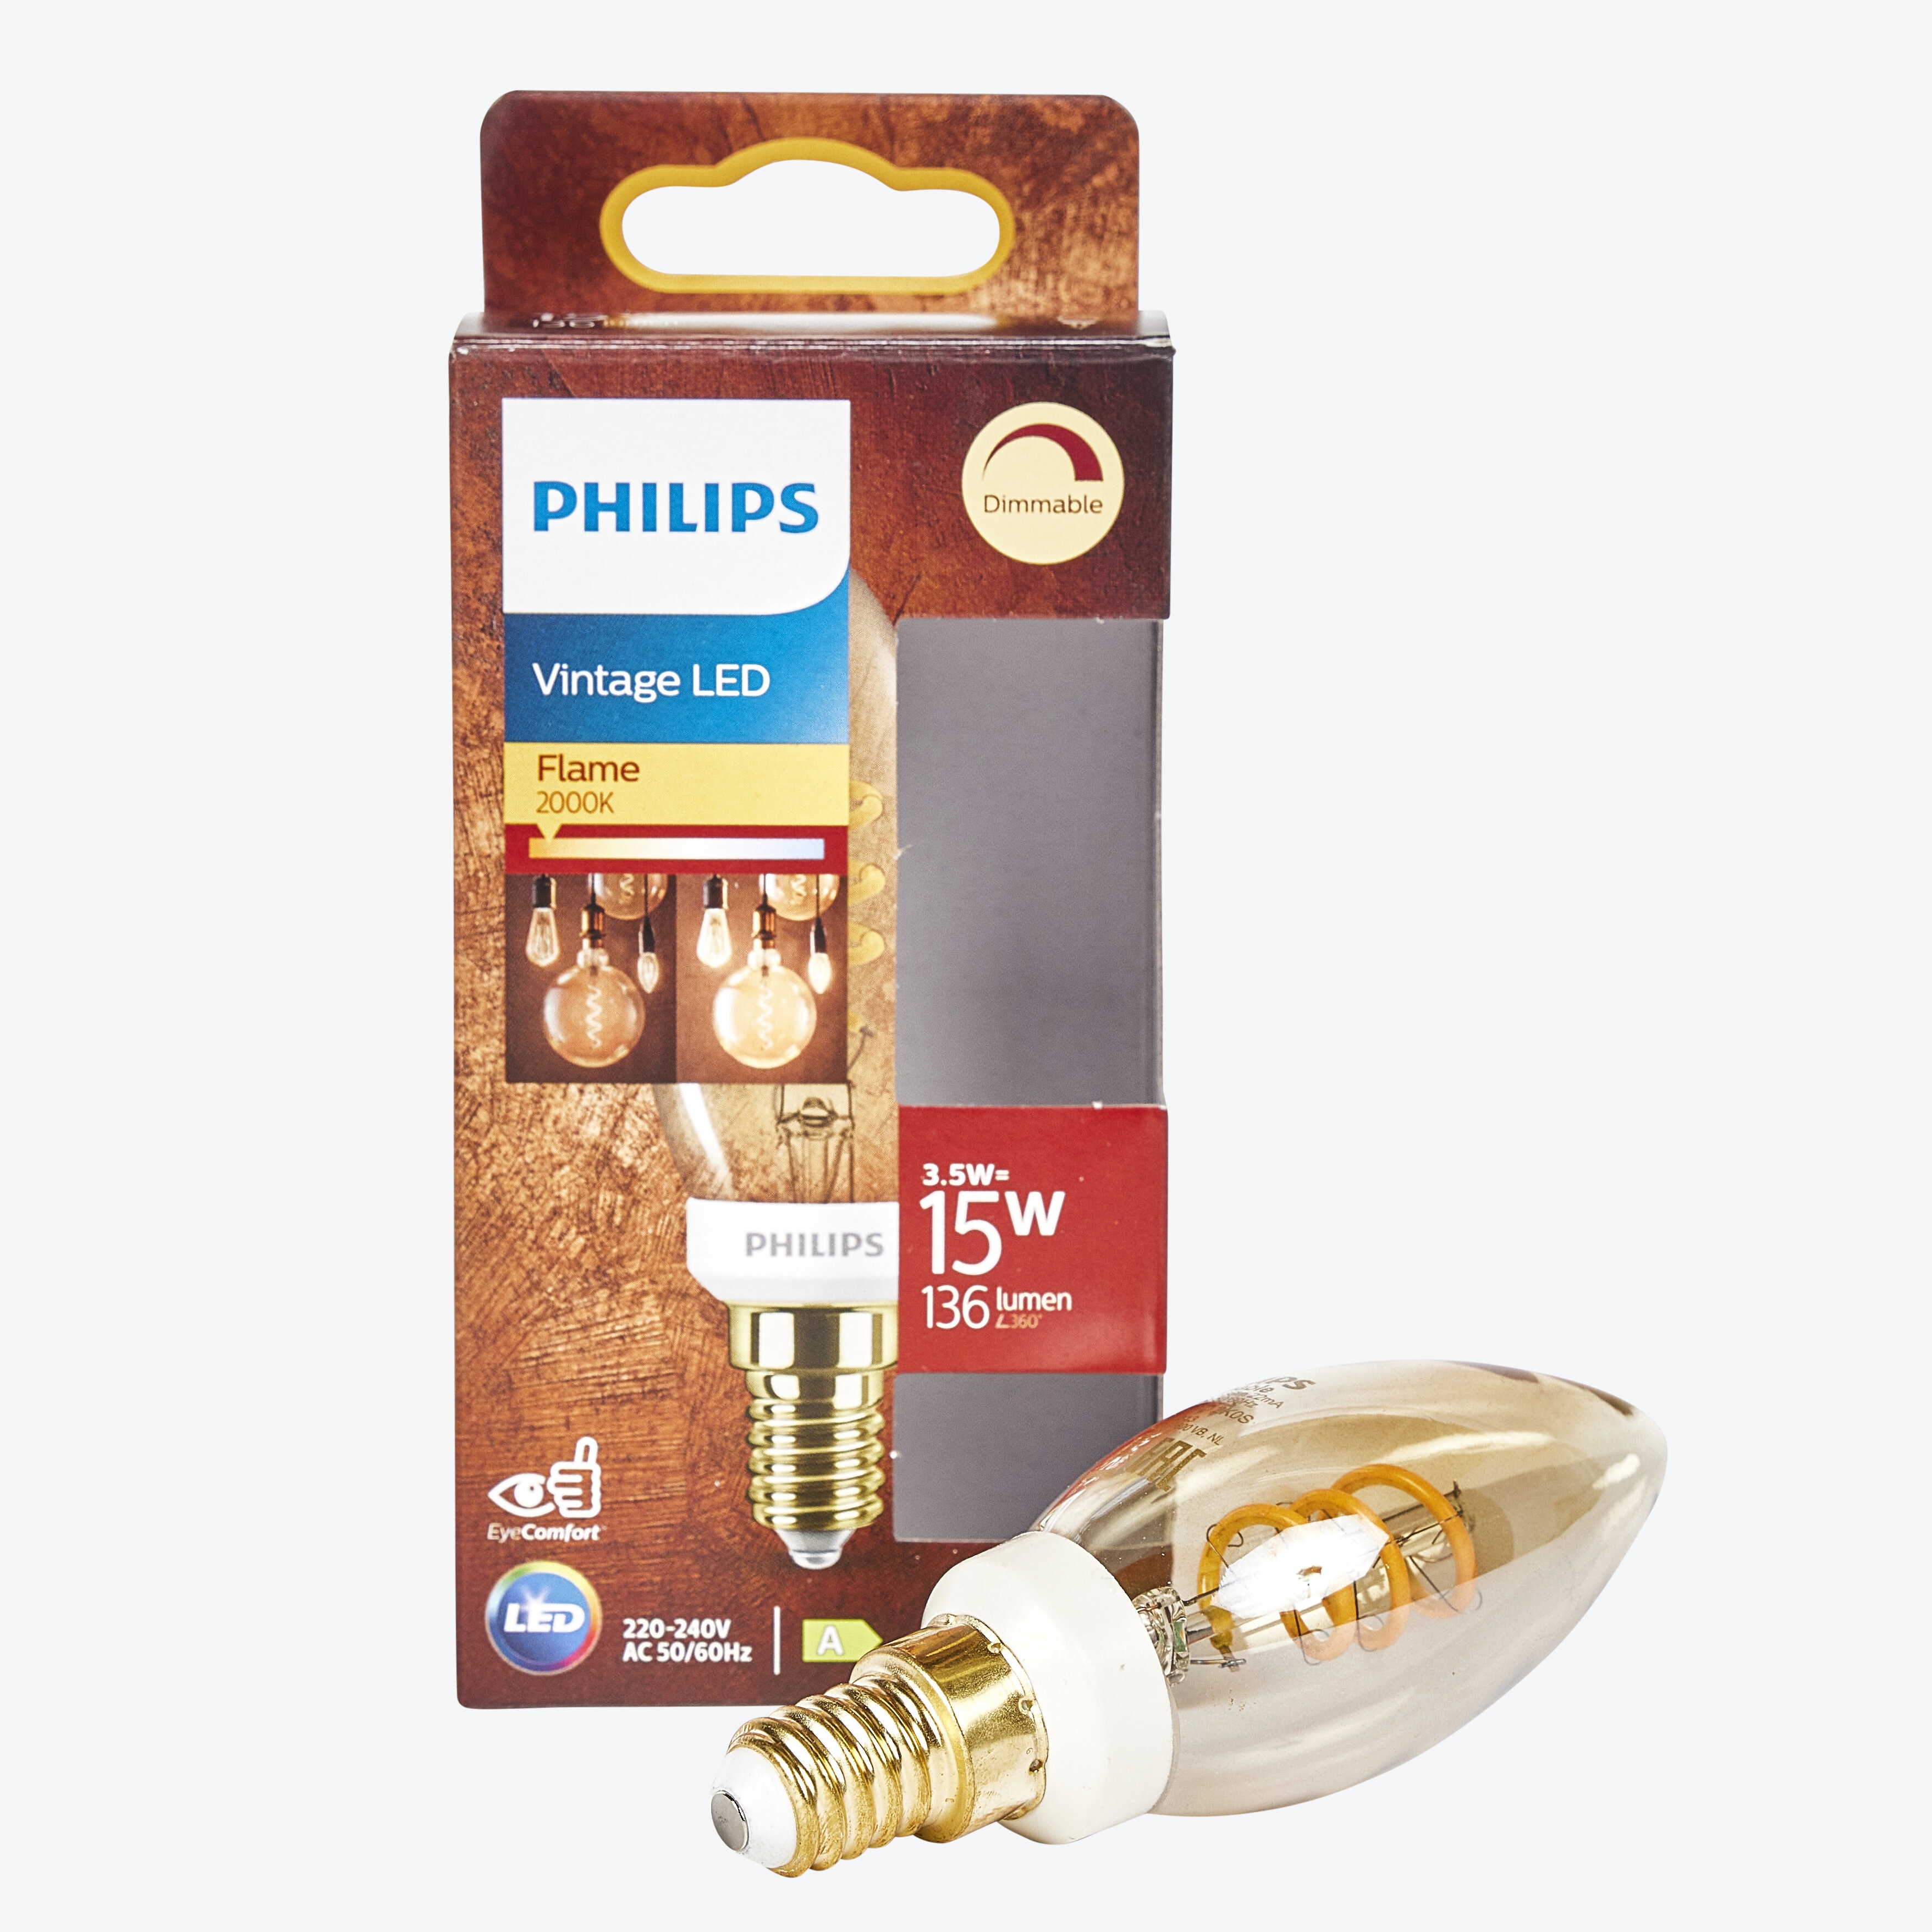 Philips LED classic 15W